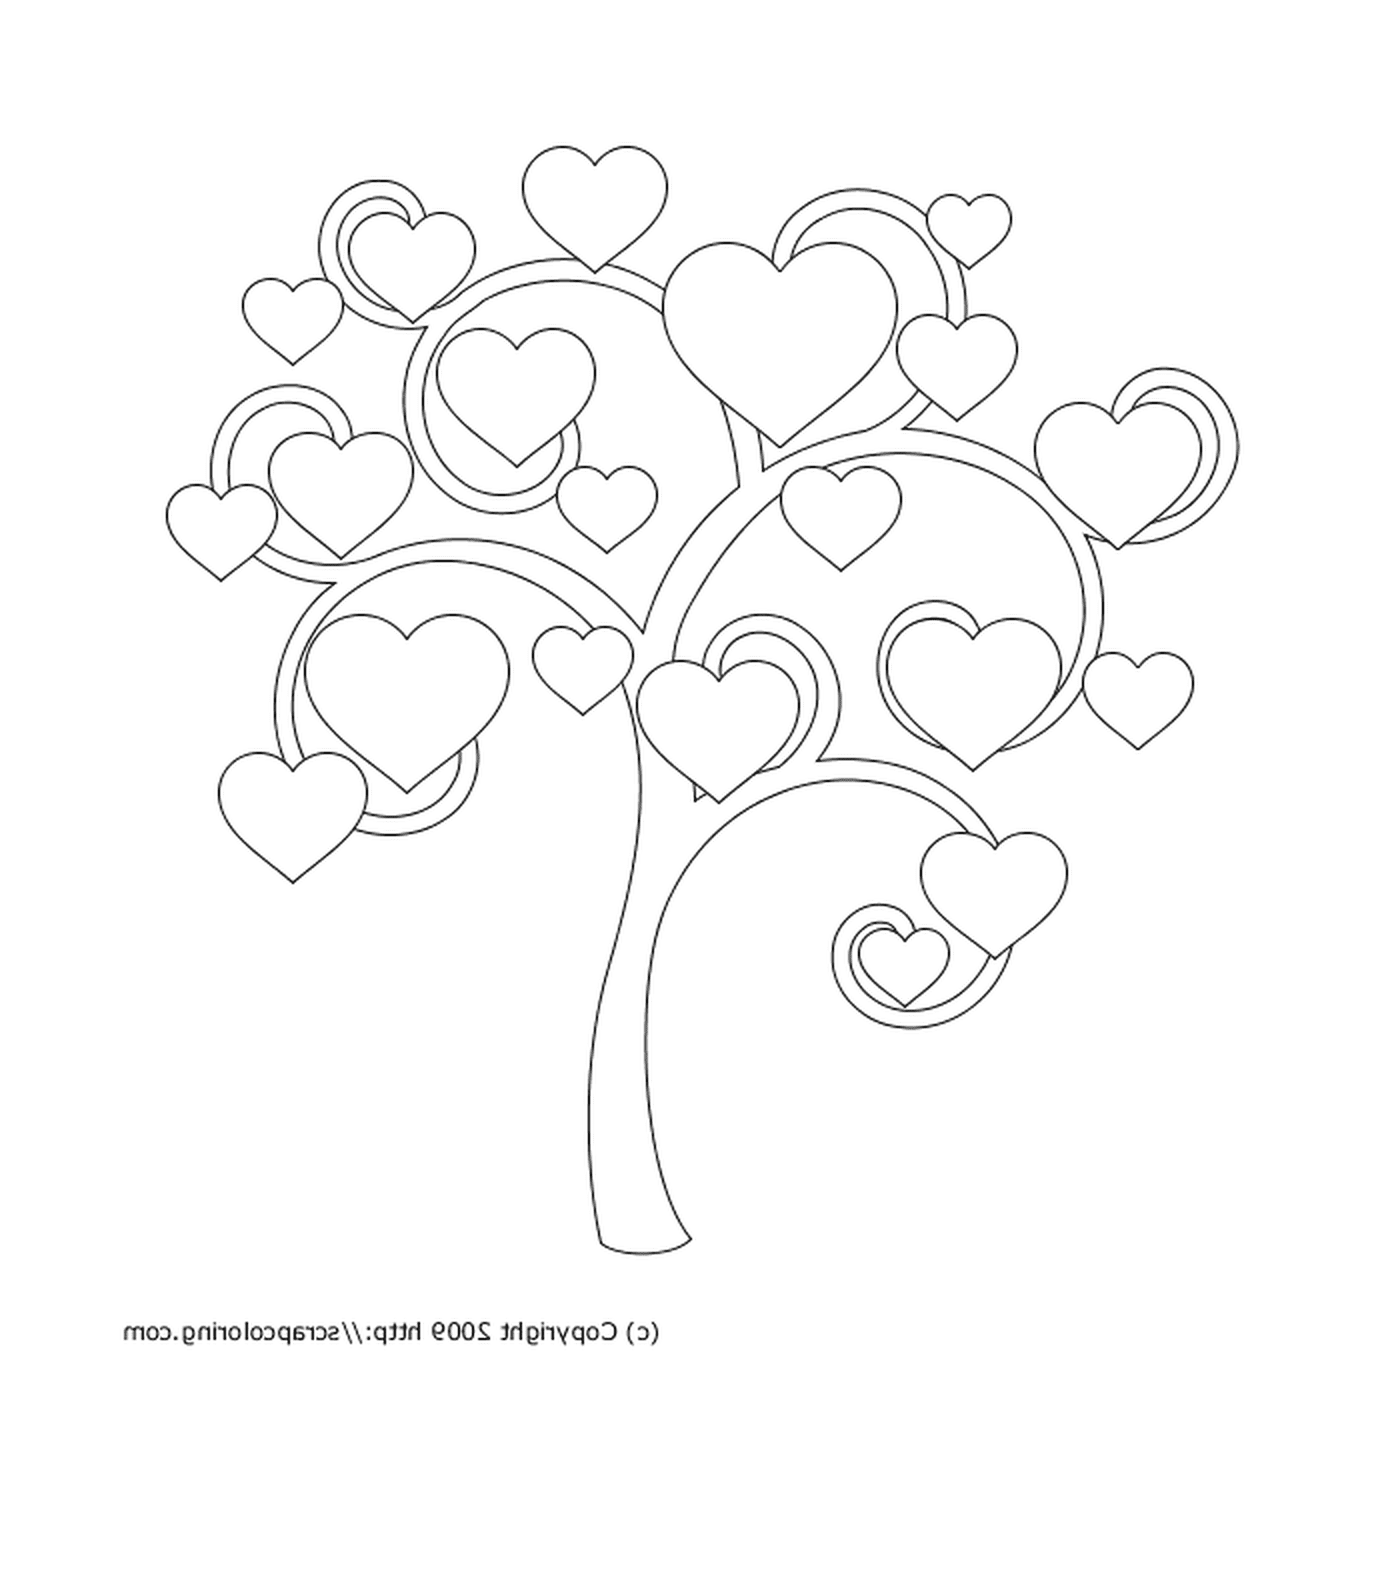  Herzbaum mit Symbolen der Liebe 